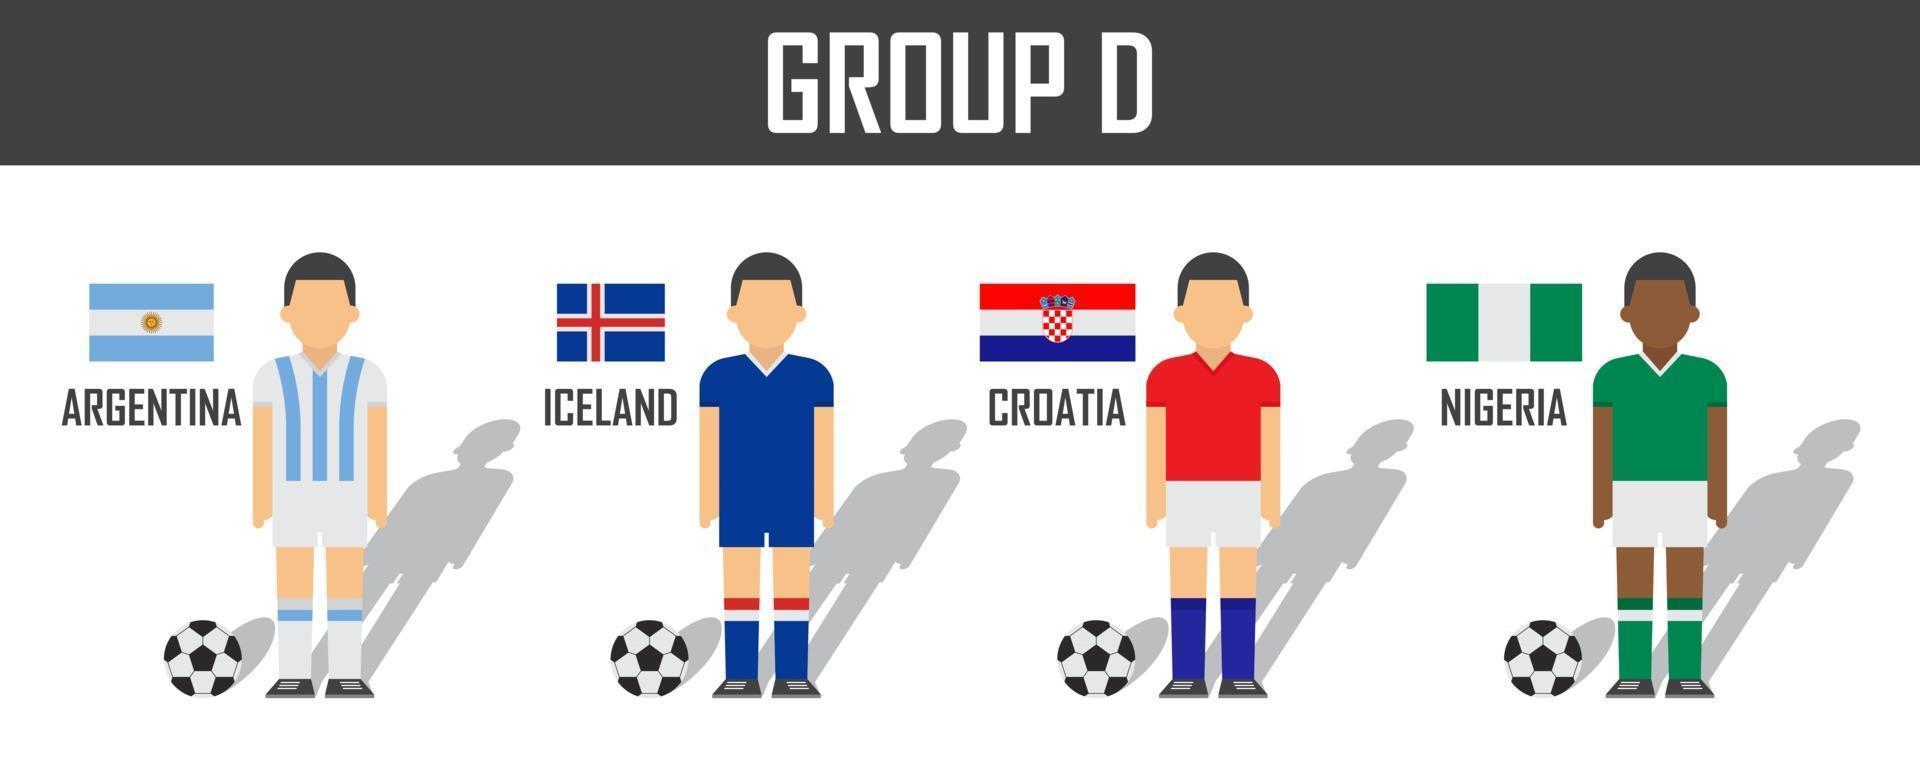 copa de fútbol 2018 equipo grupo d. futbolistas con uniforme de camiseta y banderas nacionales. vector para el torneo del campeonato mundial internacional.